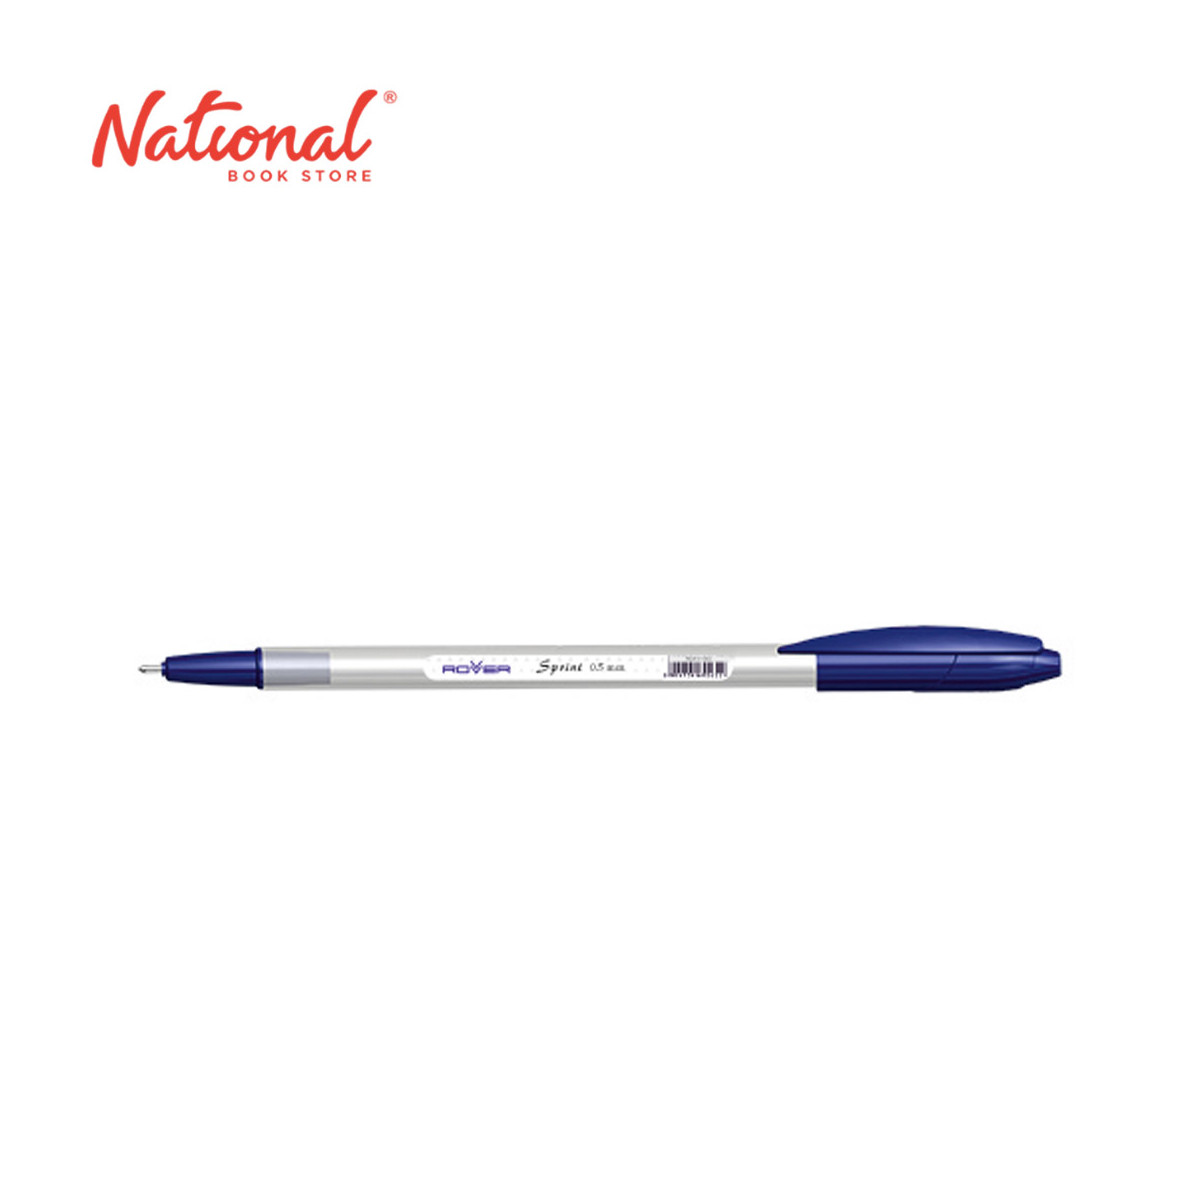 Rover Sprint Ballpoint Pen Stick 0.5mm - School & Office Supplies - Ballpen